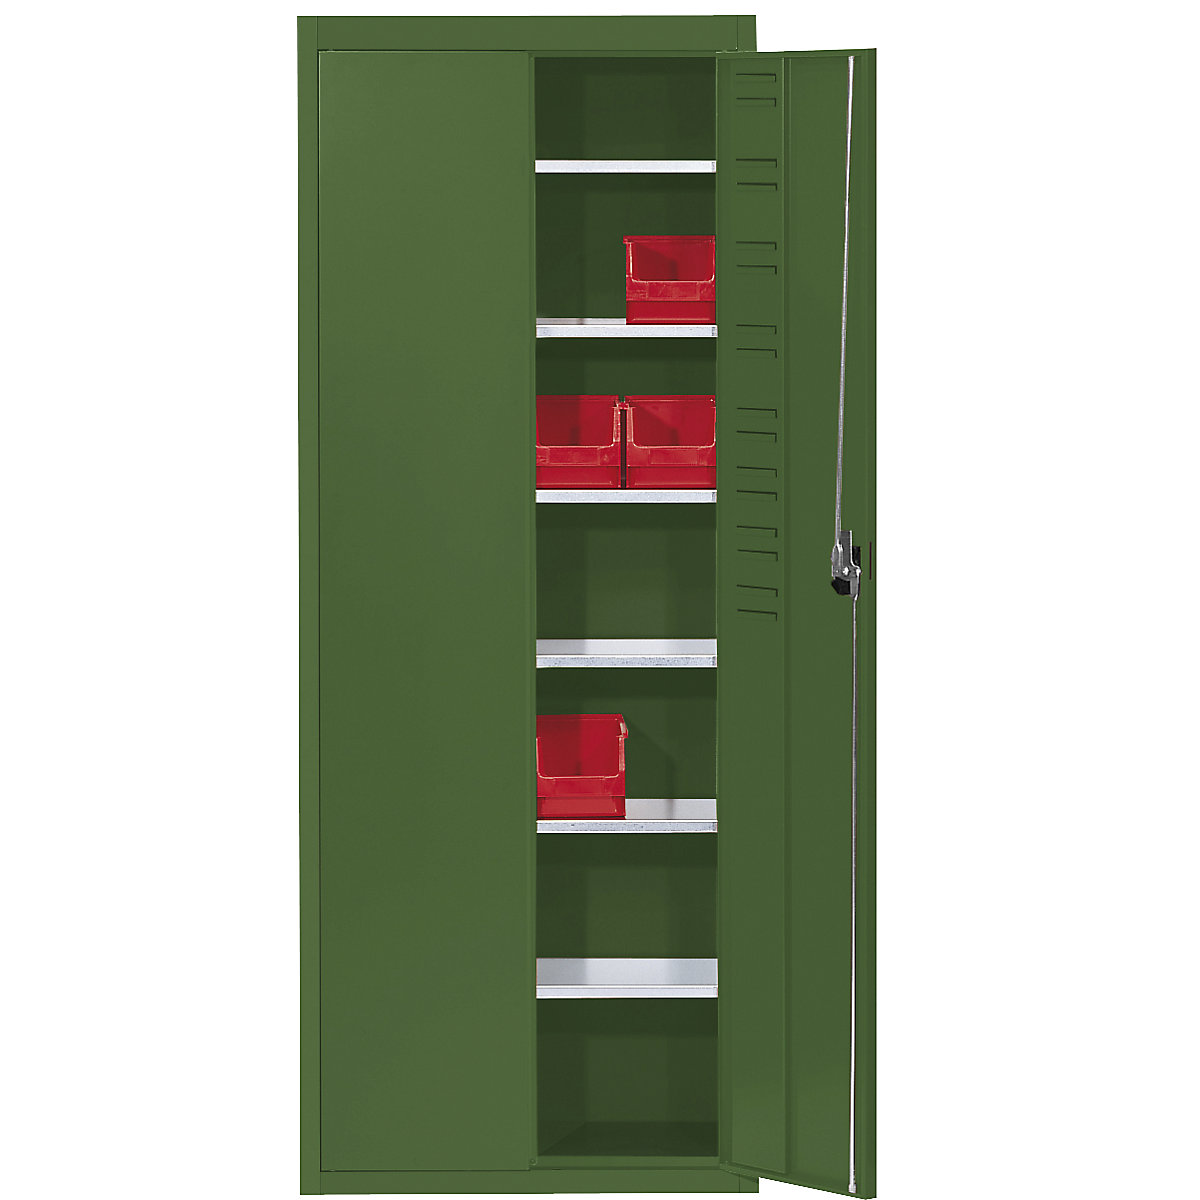 Skladišni ormar bez otvorenih skladišnih kutija – mauser, VxŠxD 1740 x 680 x 280 mm, u jednoj boji, u rezeda zelenoj boji-8